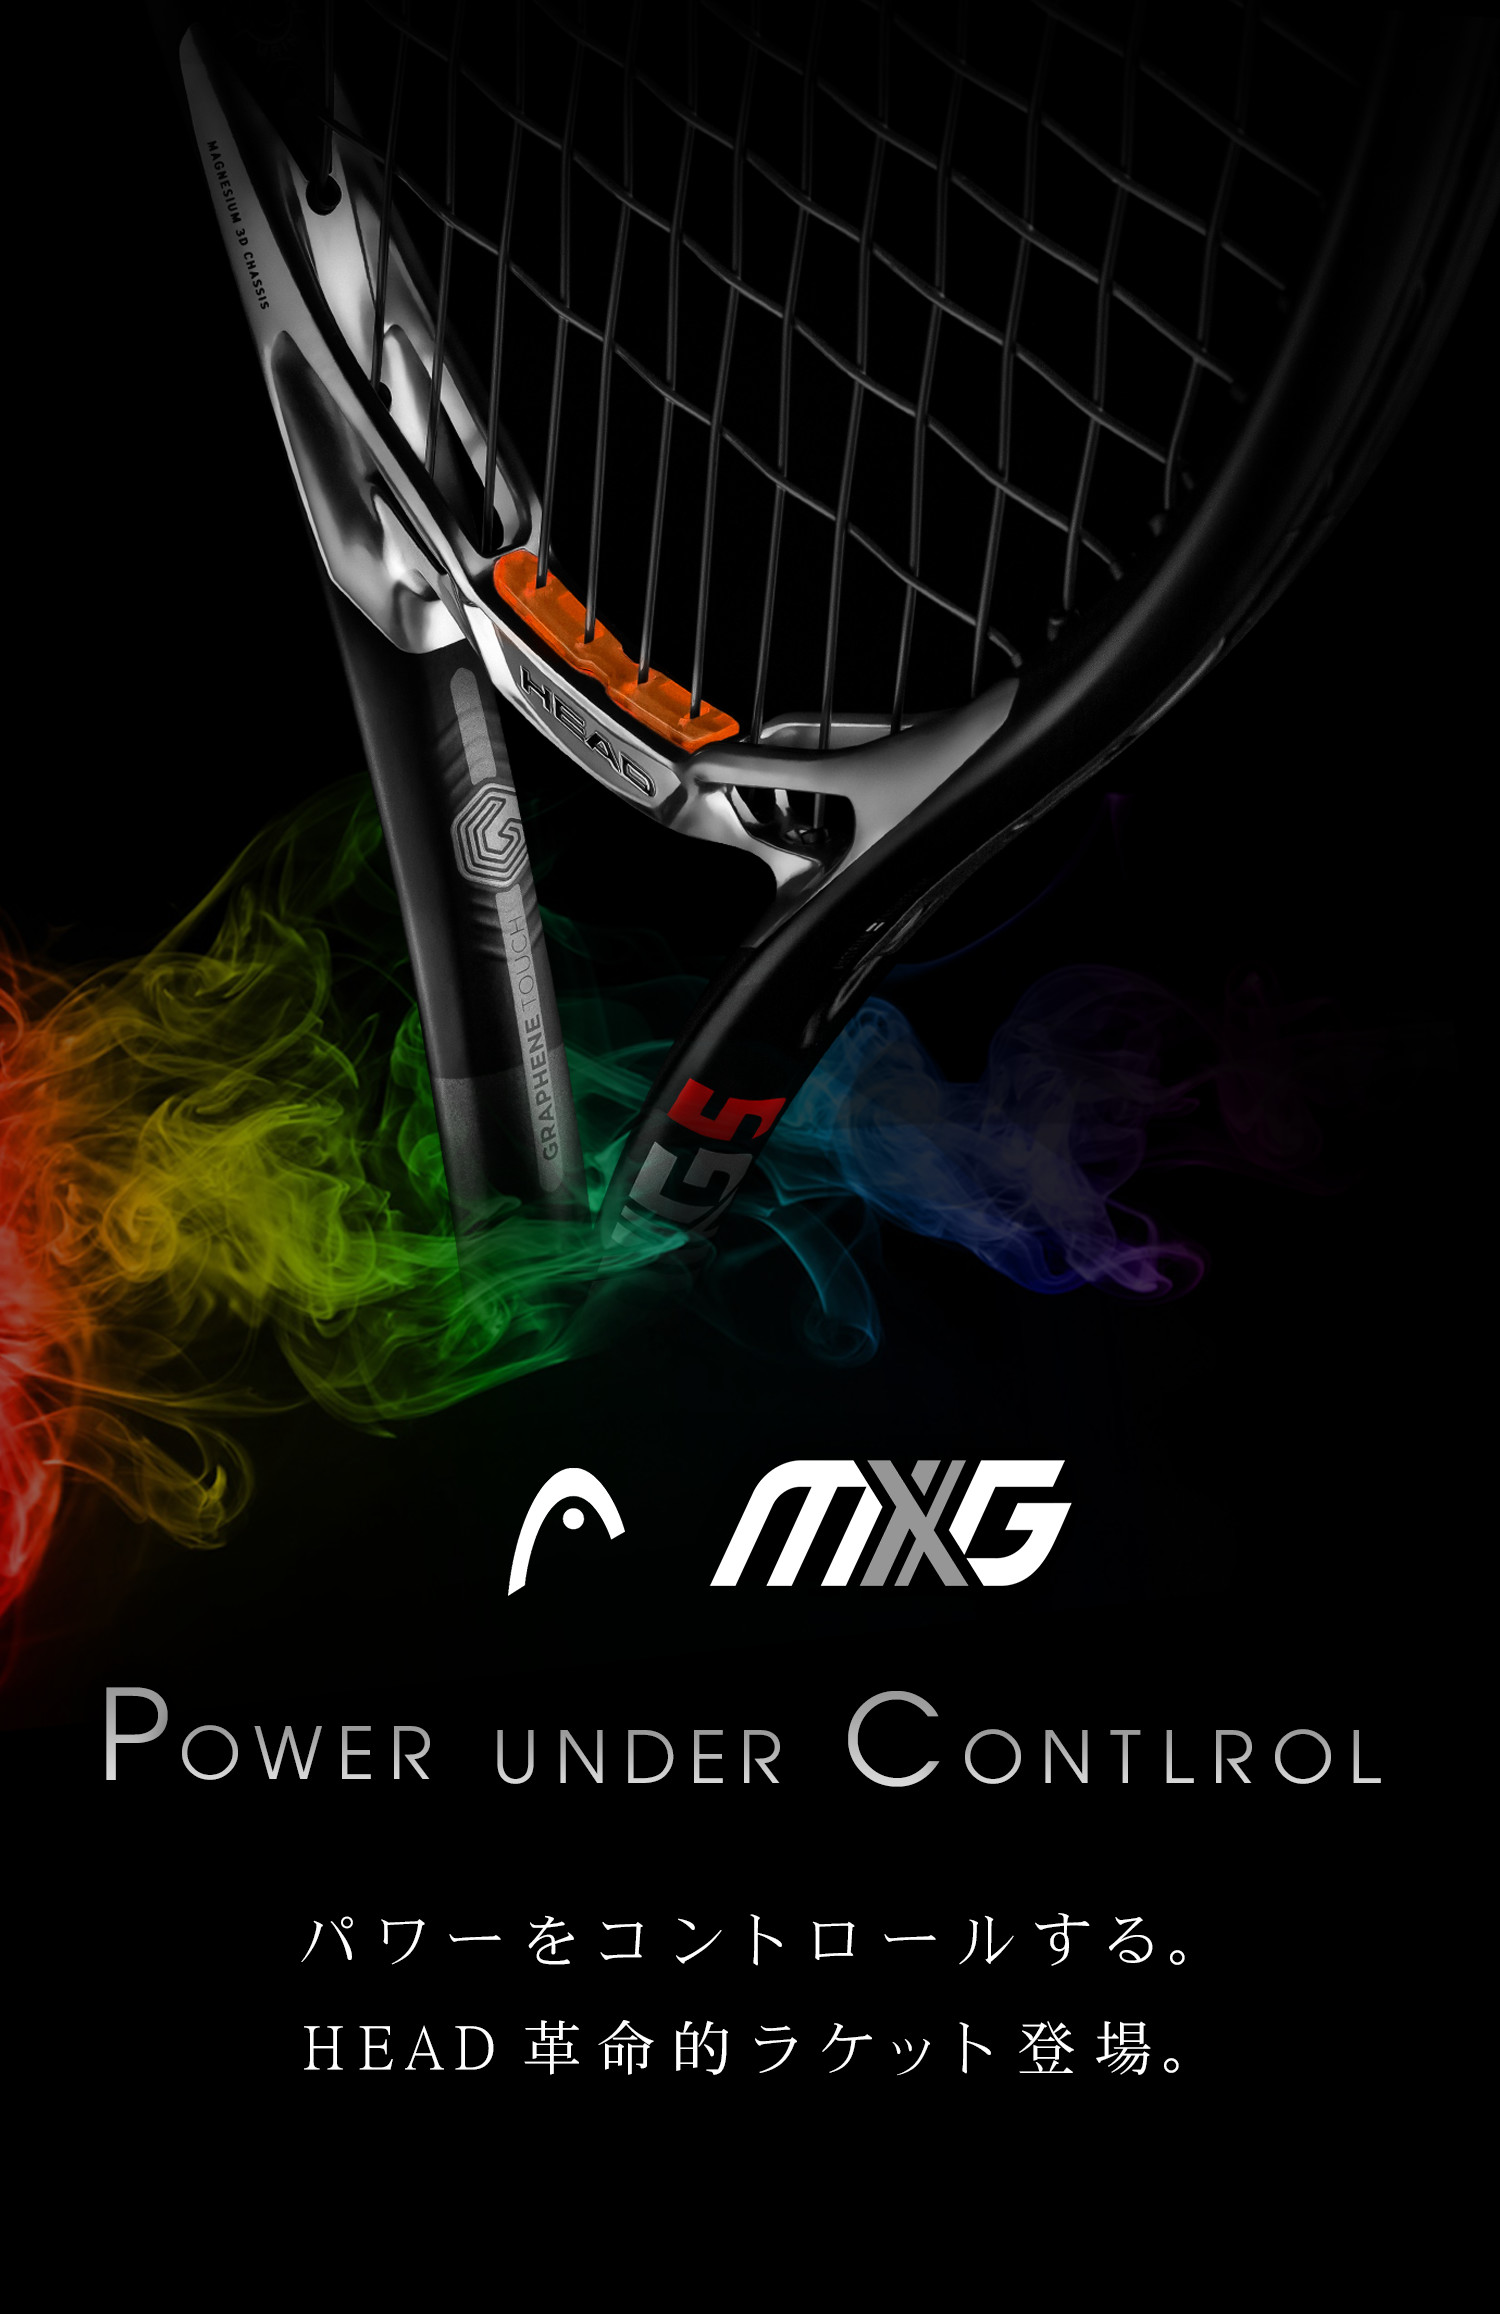 パワーをコントロールするラケット「MXG」登場。